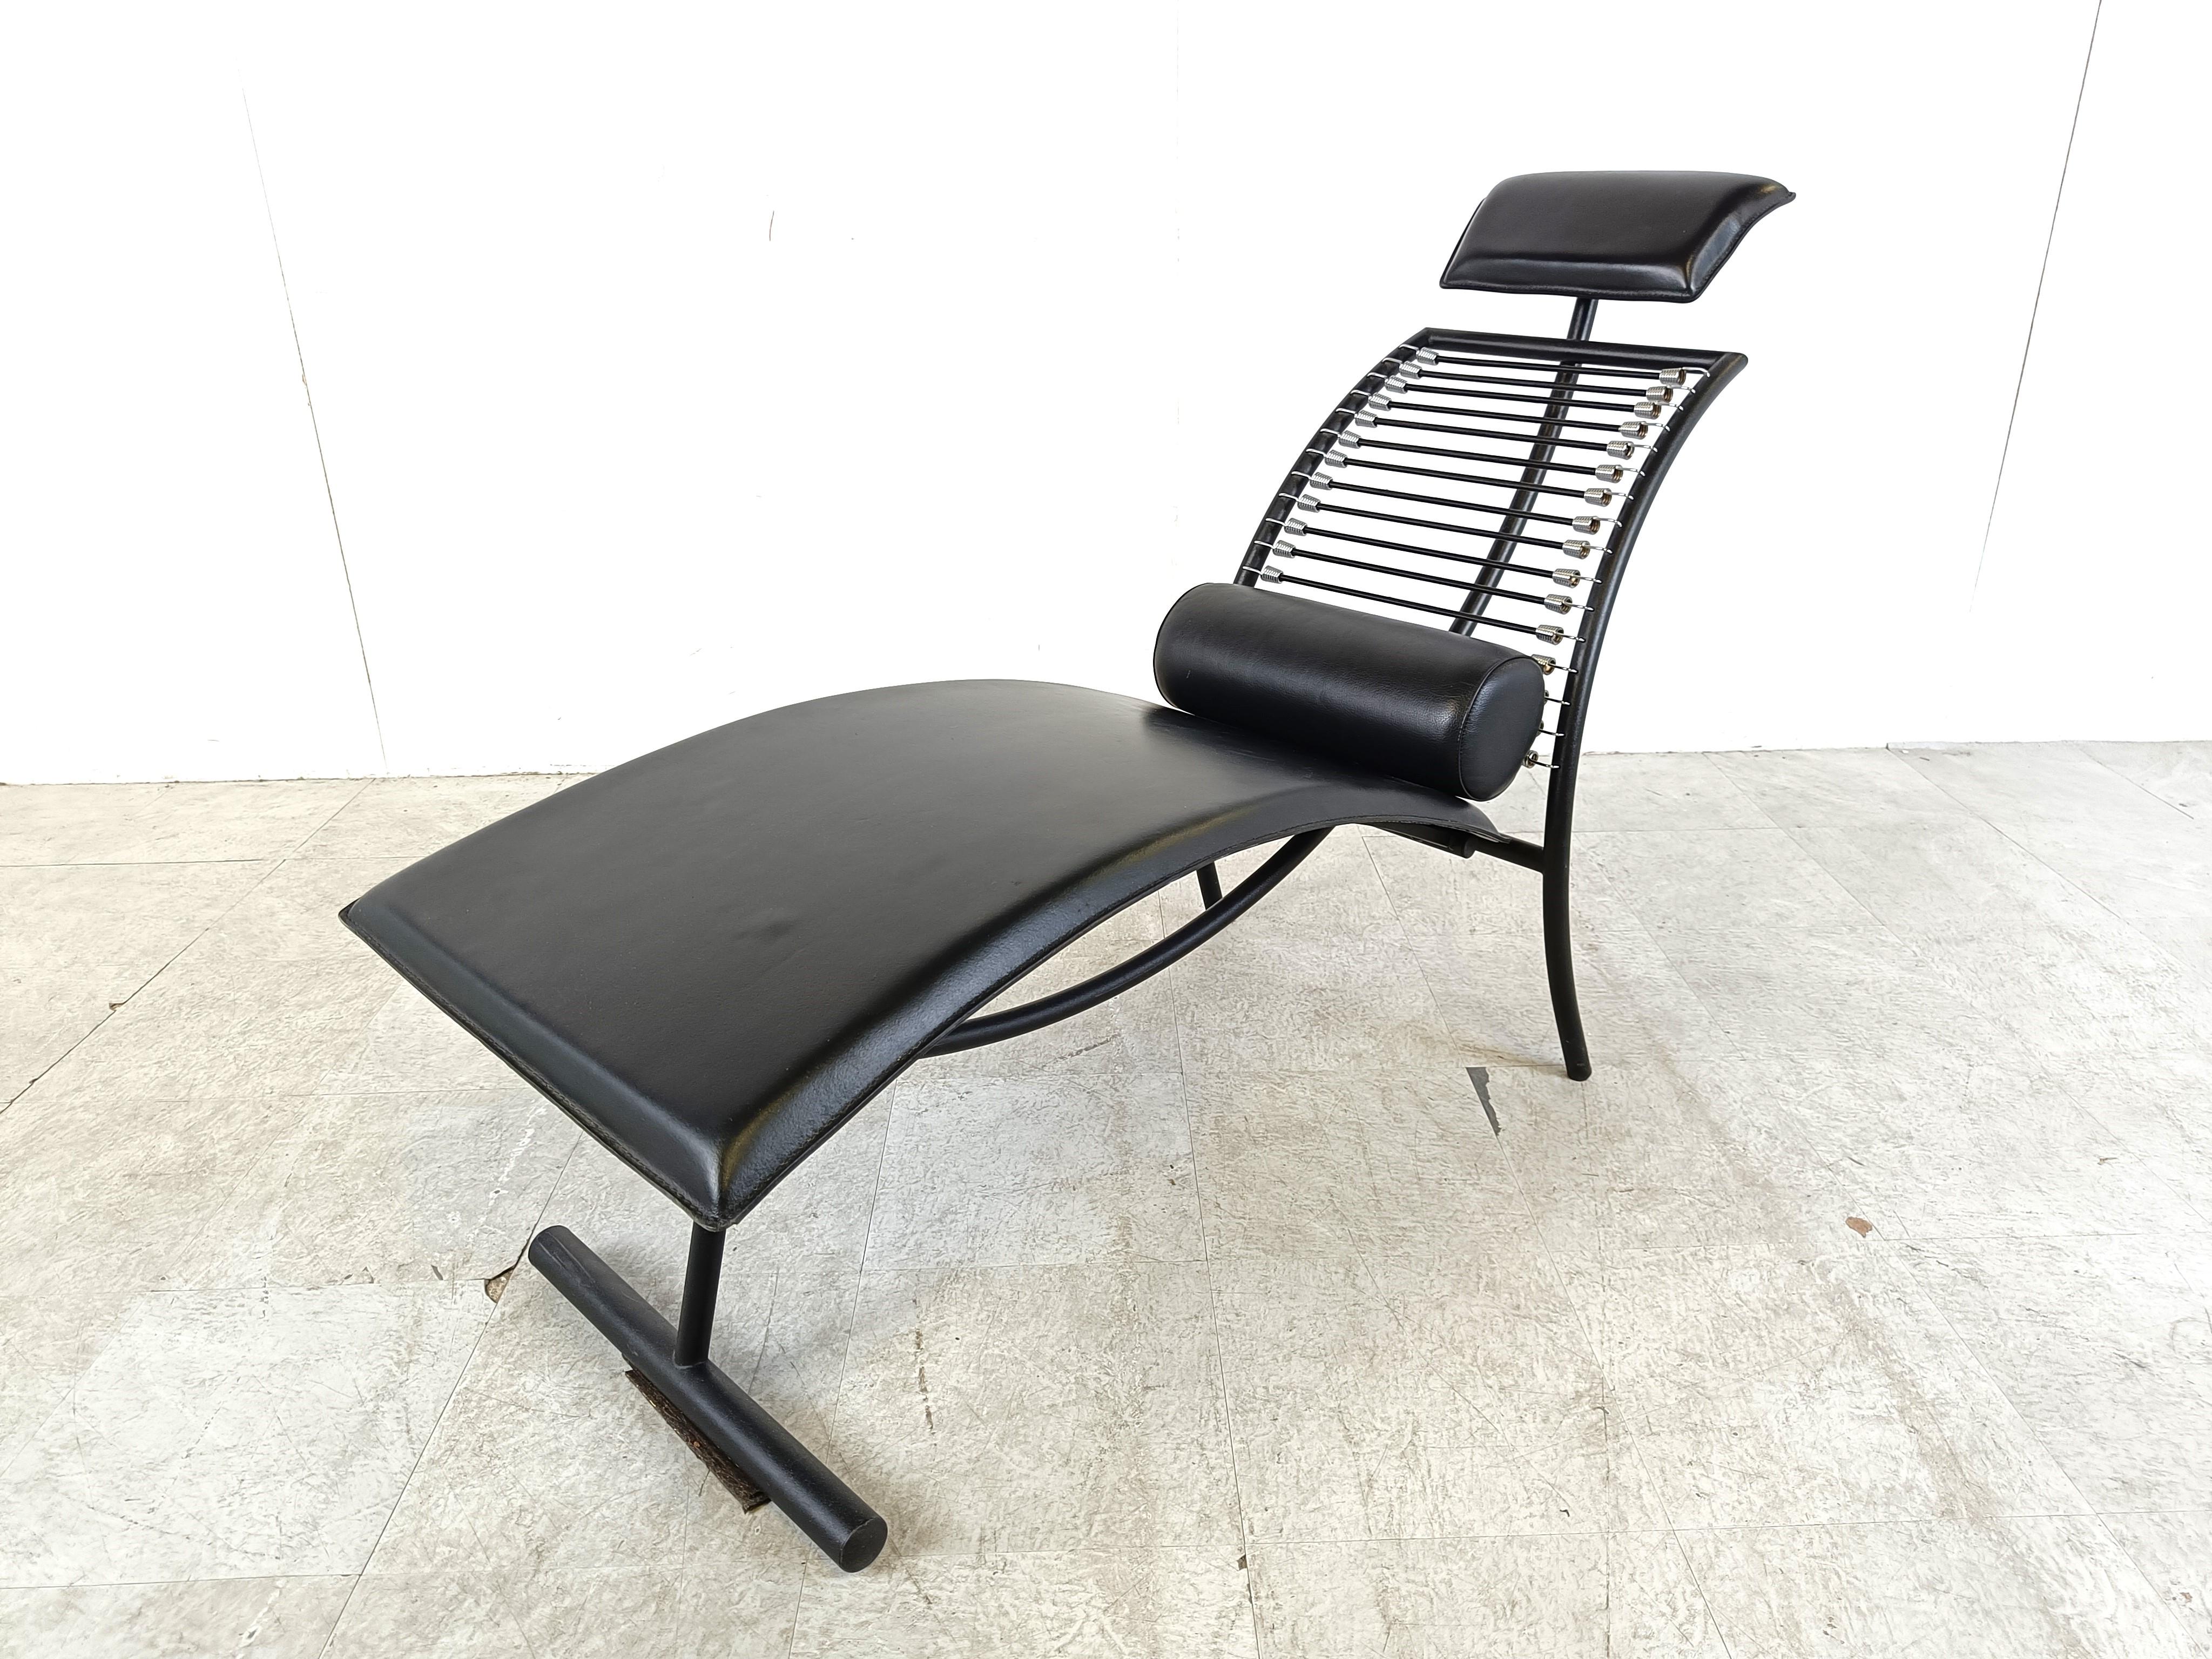 Chaise longue Vintage composée d'une élégante structure chromée, de cordes élastiques et de coussins en cuir noir.

Rare et magnifique chaise de salon dans le style de la chaise 'sandow' de Rene Herbst.

La chaise présente de belles courbes et un